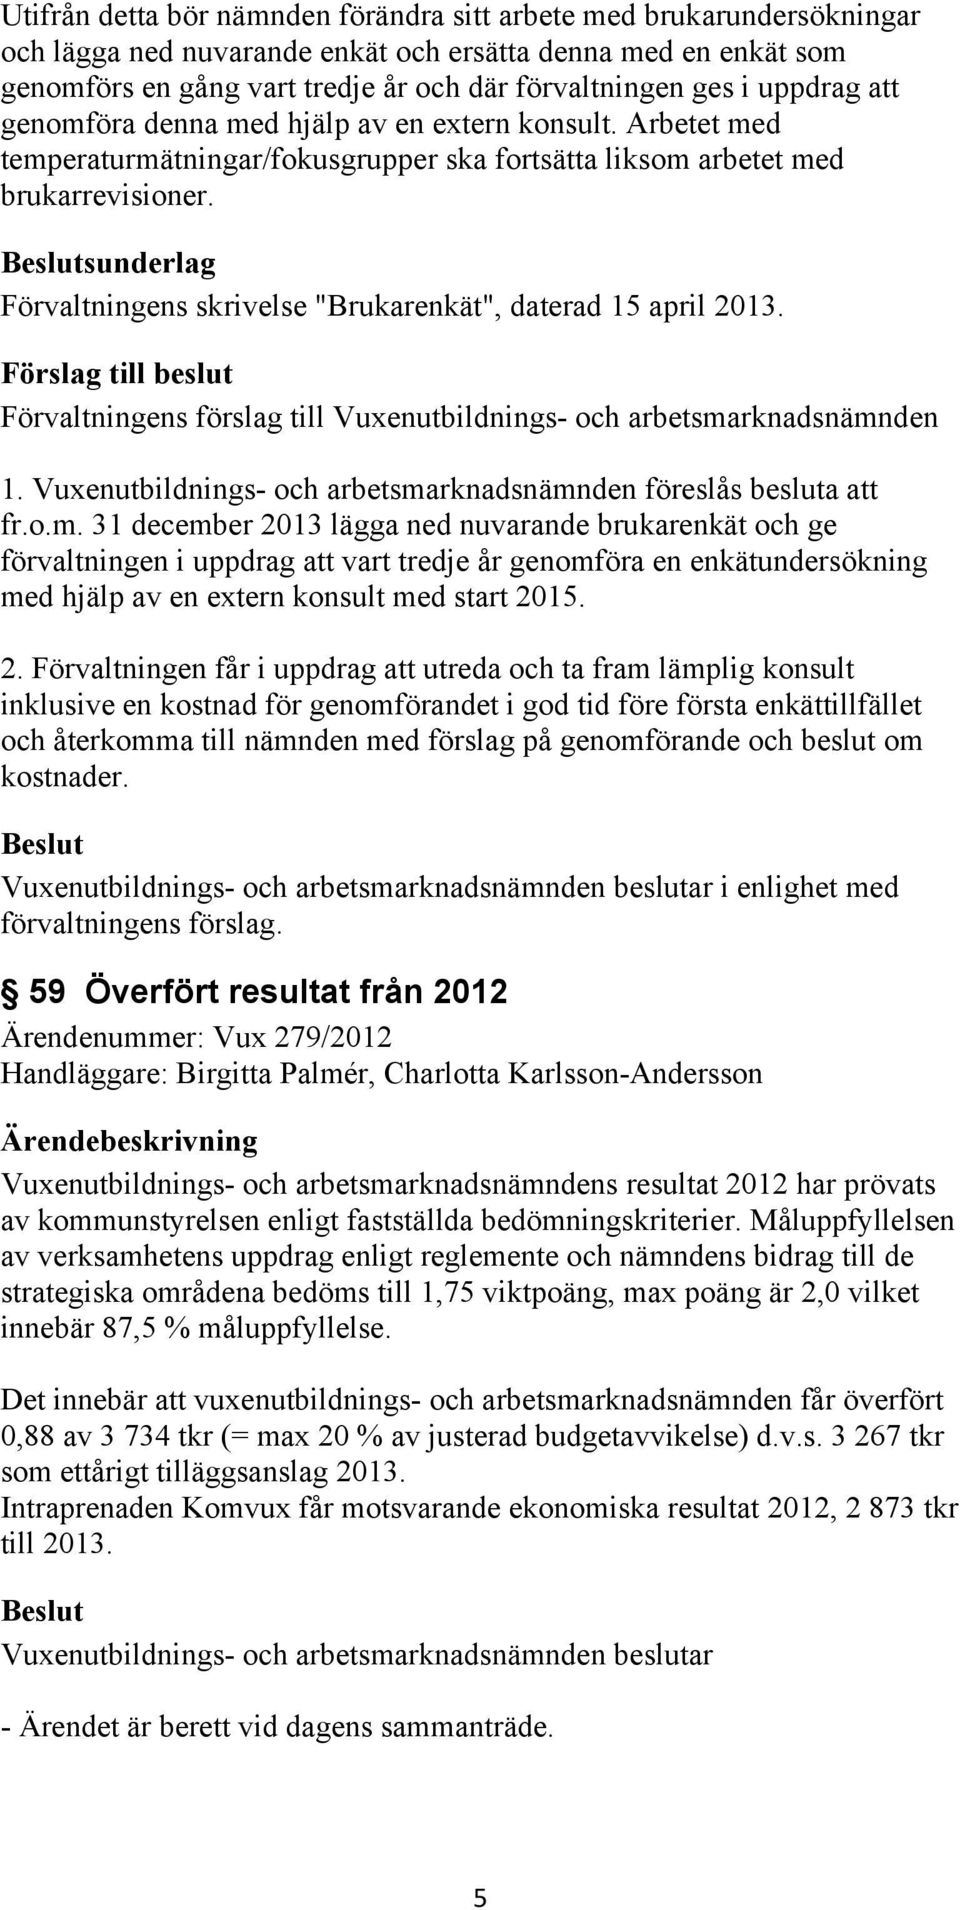 sunderlag Förvaltningens skrivelse "Brukarenkät", daterad 15 april 2013. 1. Vuxenutbildnings- och arbetsma